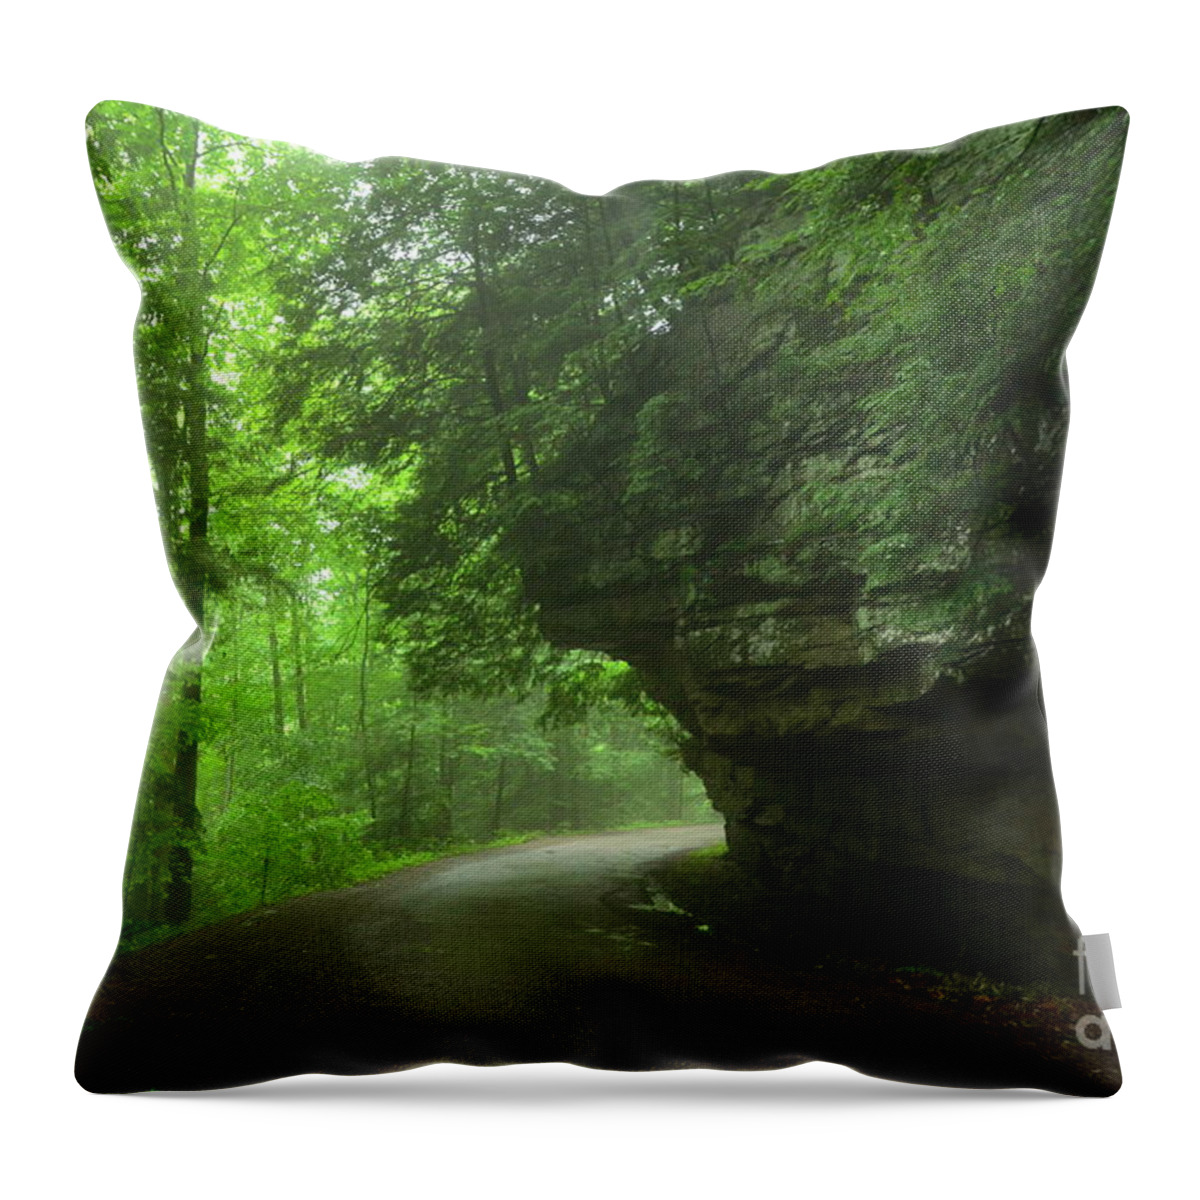 Green Throw Pillow featuring the photograph Pennsylvania Mountain Scene - 3 by Bob Sample